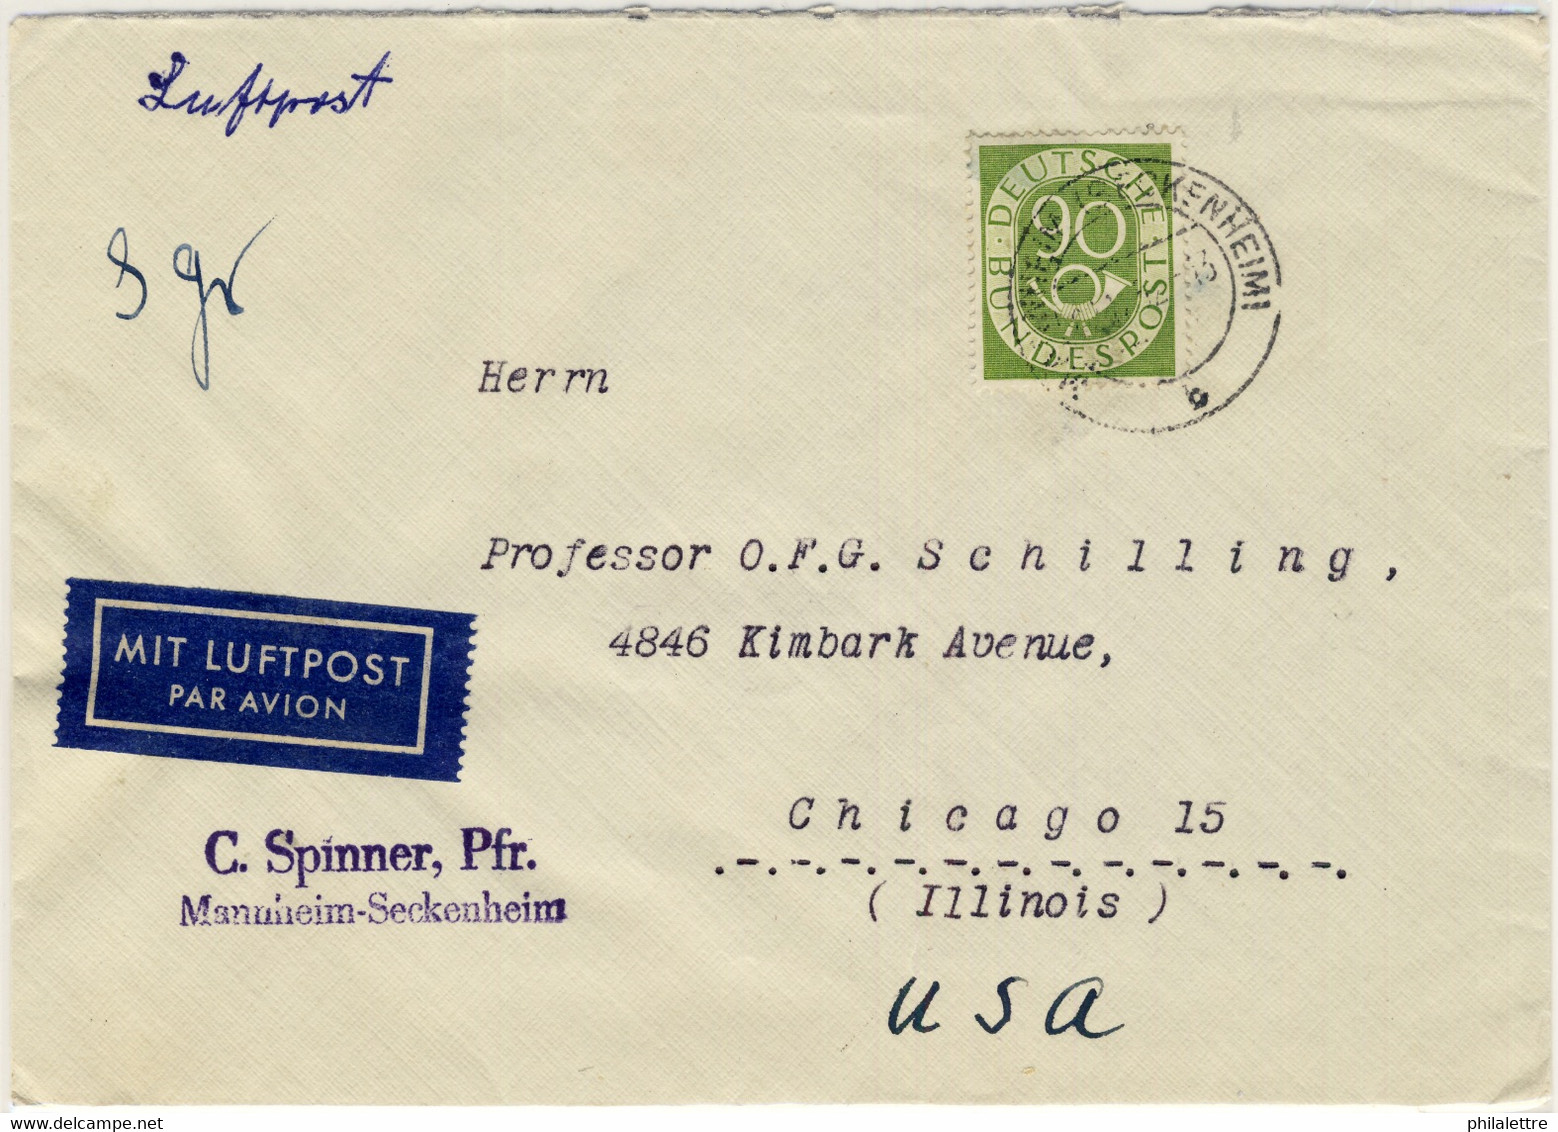 ALLEMAGNE / DEUTSCHLAND - 1952 Posthorn 90pf Einzelfrankatur Mi.138 Auf Luftbrief Aus Mannheim Nach USA - Selten - Covers & Documents